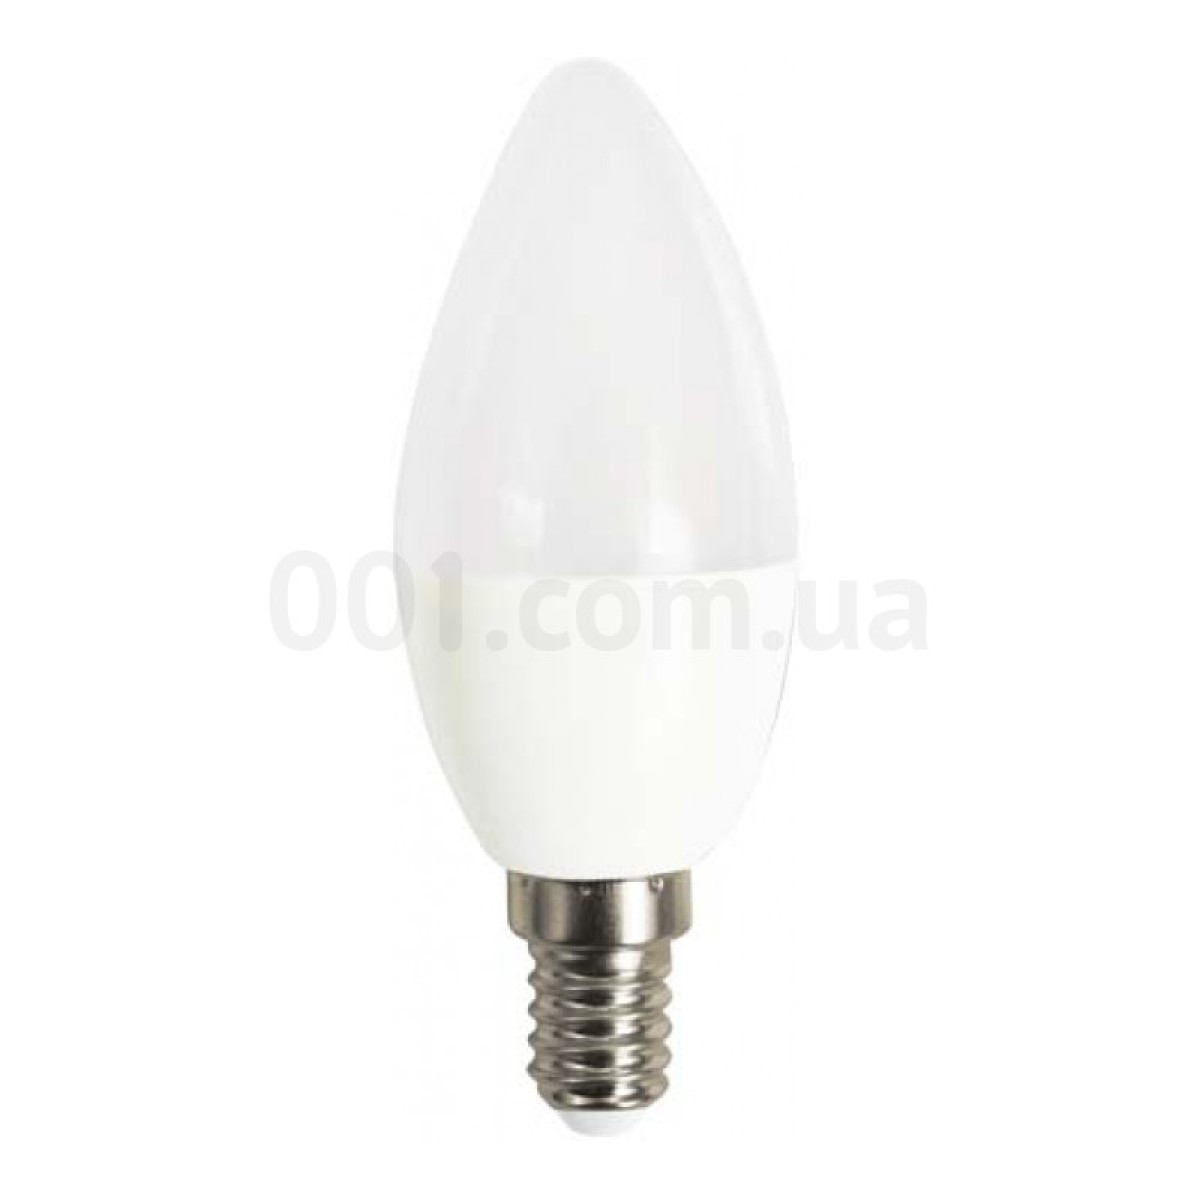 Светодиодная лампа LB-720 C37 (свеча) 4Вт 4000K E14, Feron 256_256.jpg